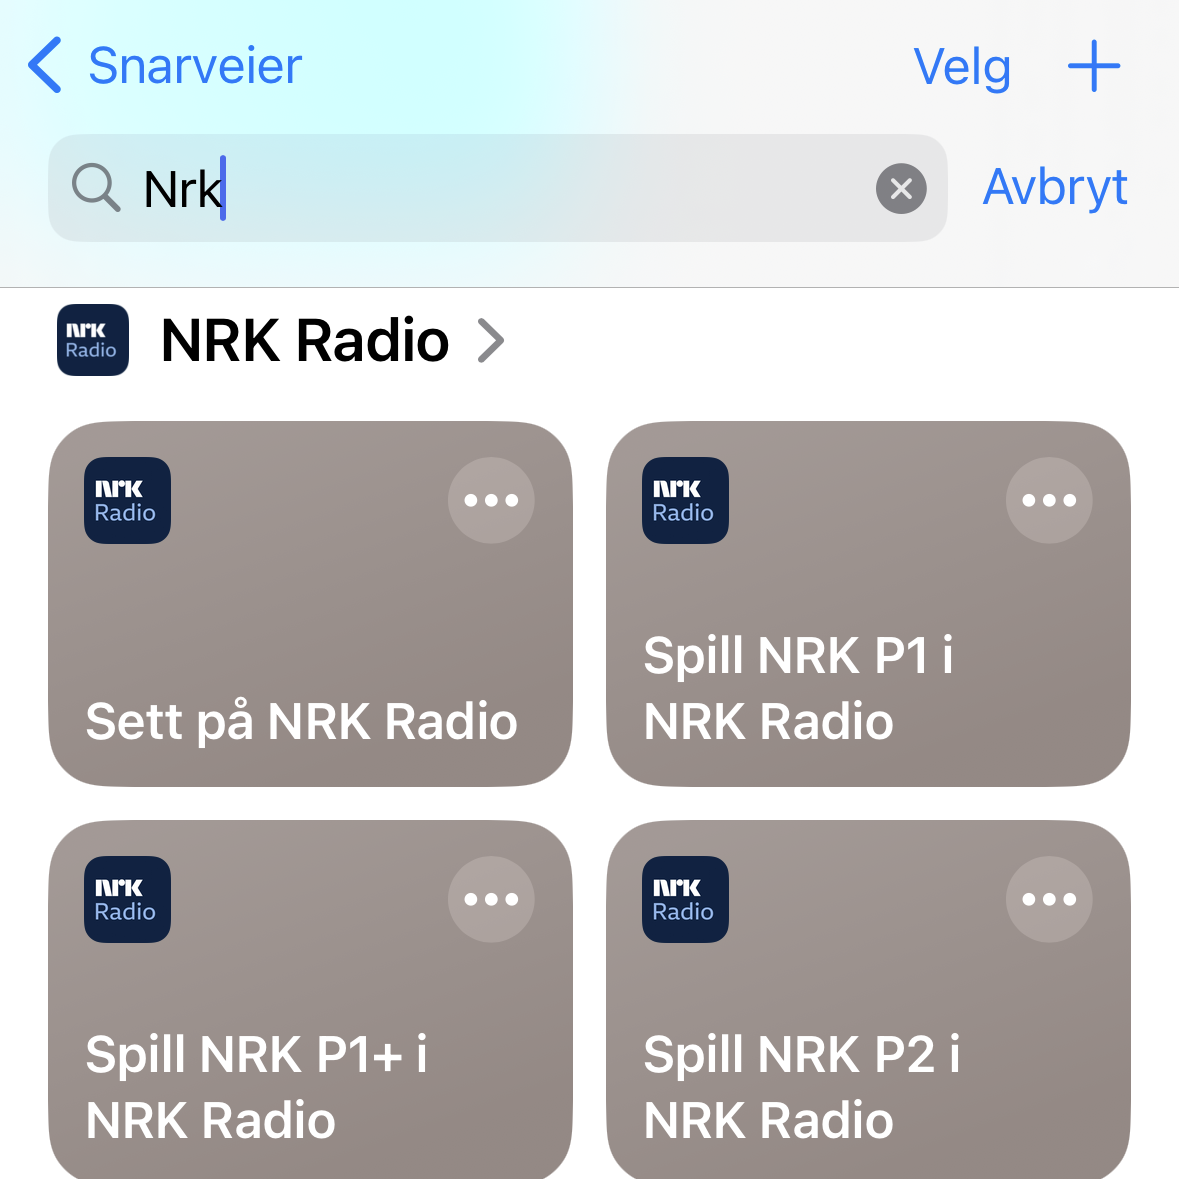 Skjermbilde som viser søkeresultater i appen Snarveier. Fire bokser vises, med hver sine titler inni boksene. "Sett på NRK Radio", "Spill NRK P1 i NRK Radio", "Spill NRK P1+ i NRK Radio" og "Spill NRK P2 i NRK Radio".